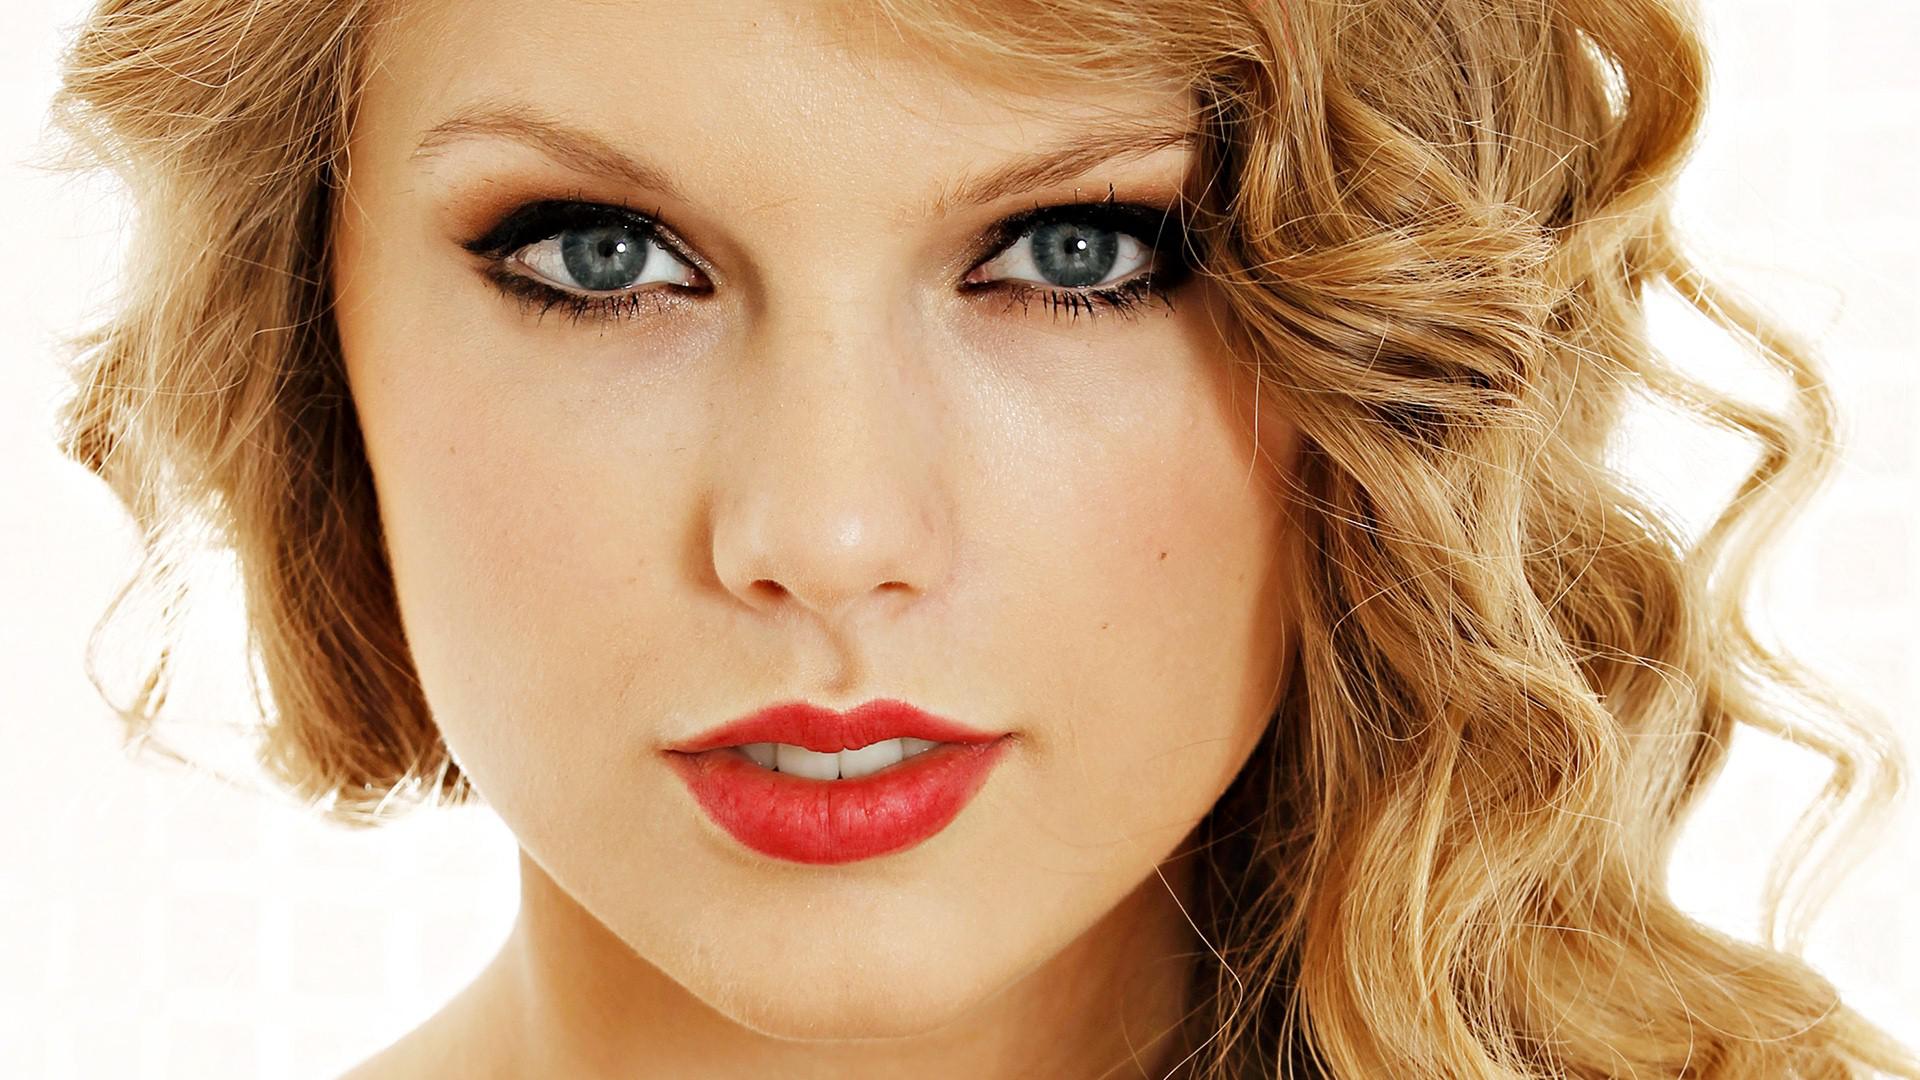 Hd Beautiful Taylor Swift American Singer Red Lips - Portrait Taylor Swift Face - HD Wallpaper 